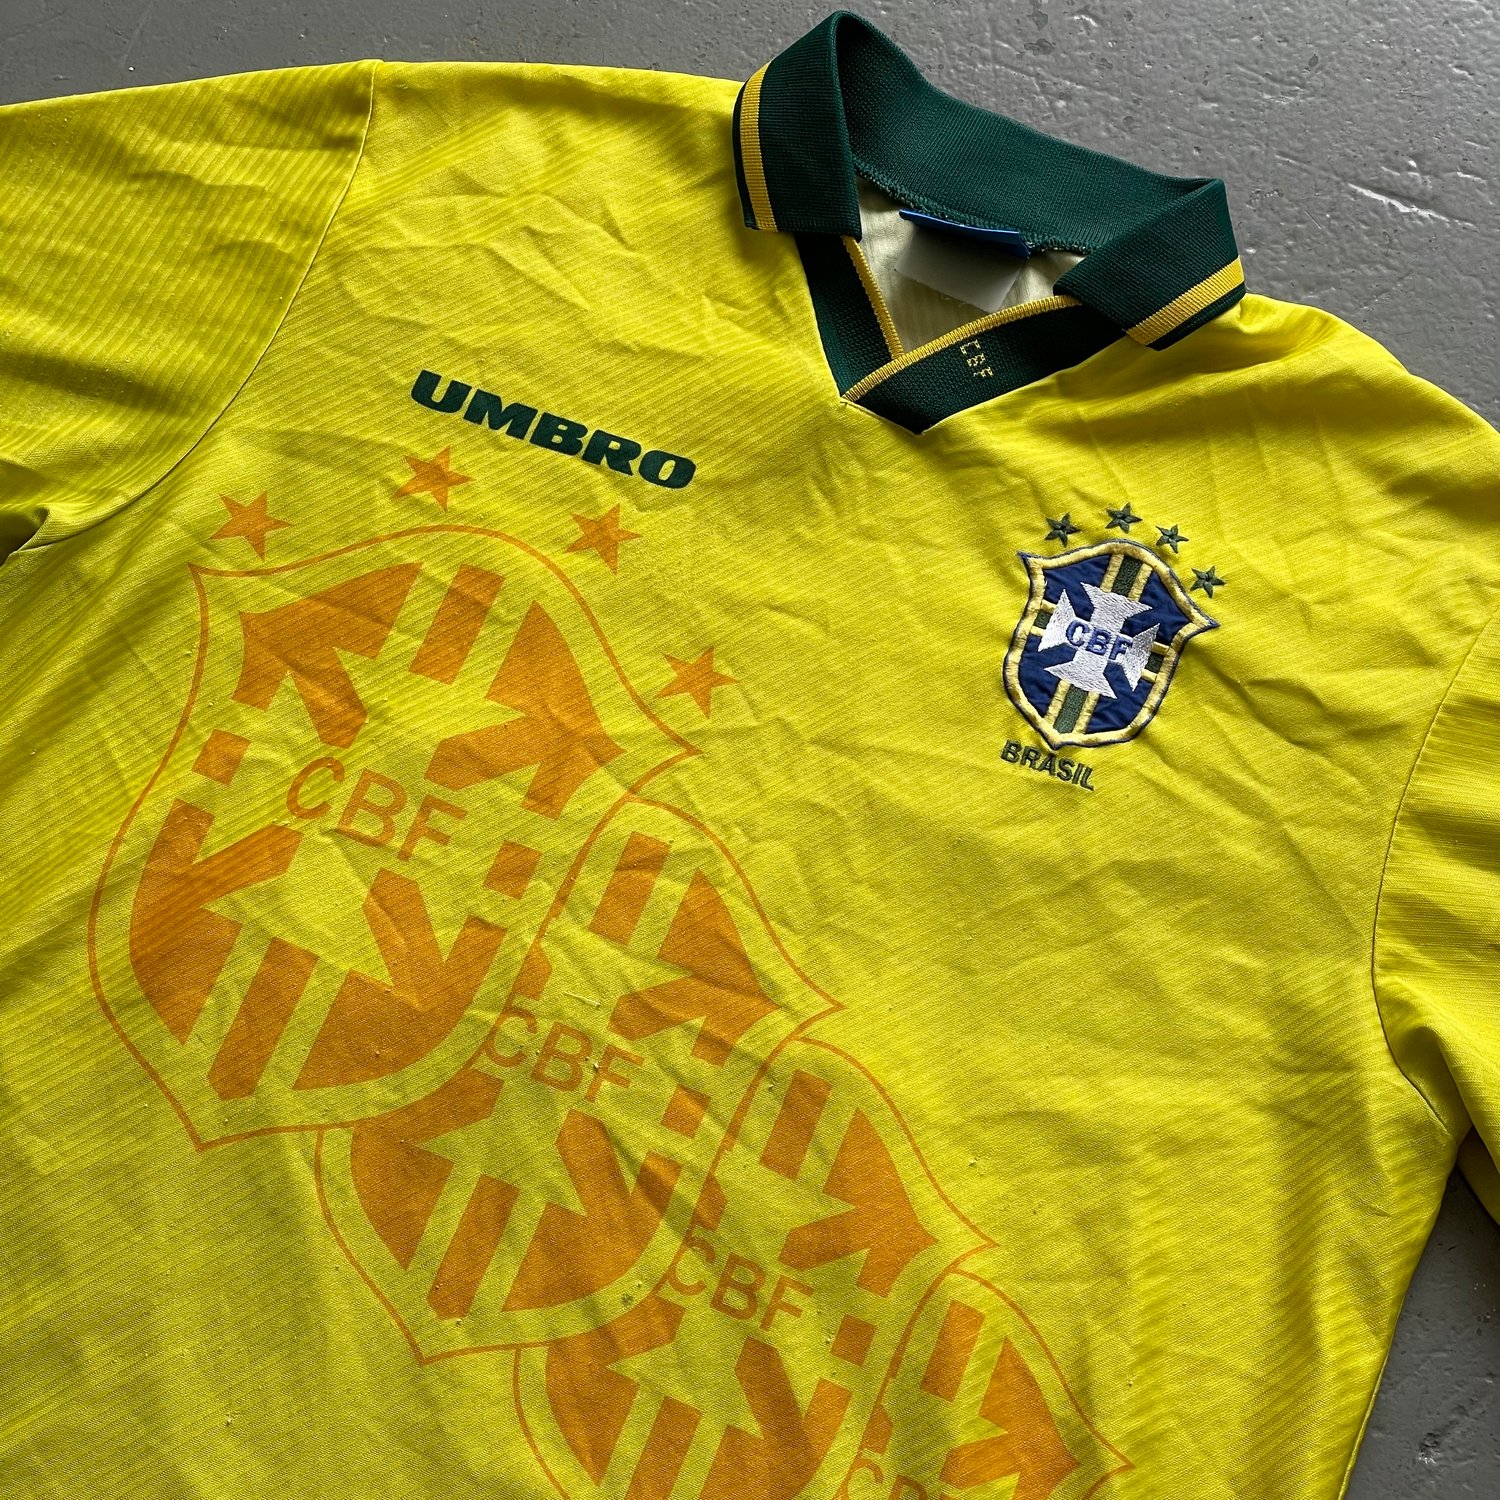 Image of 94 Brazil home shirt size xl Juninho 10 